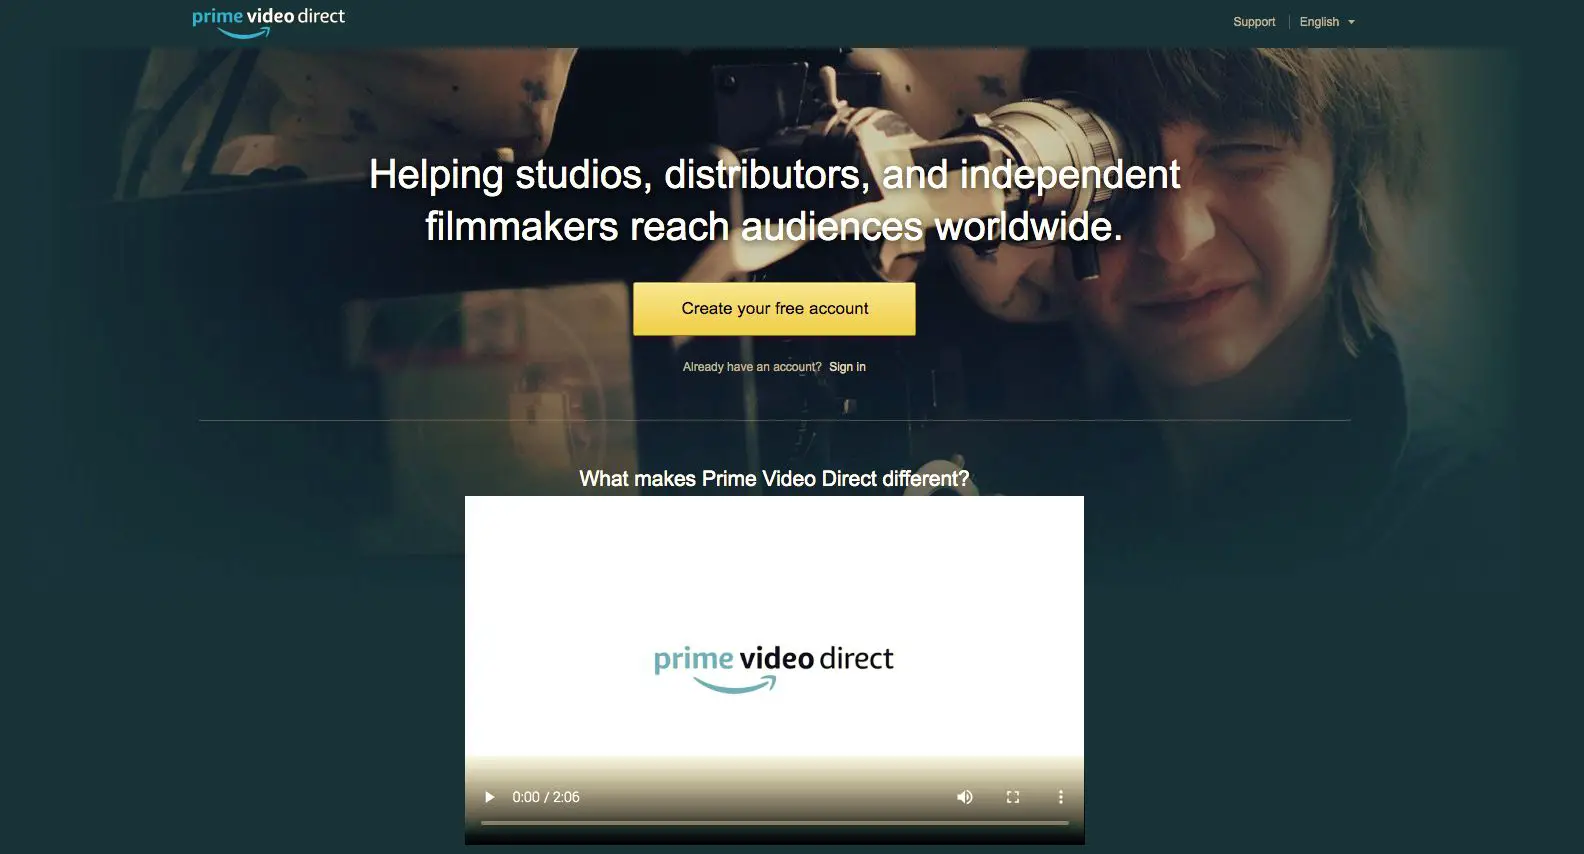 Página inicial do Prime Video Direct